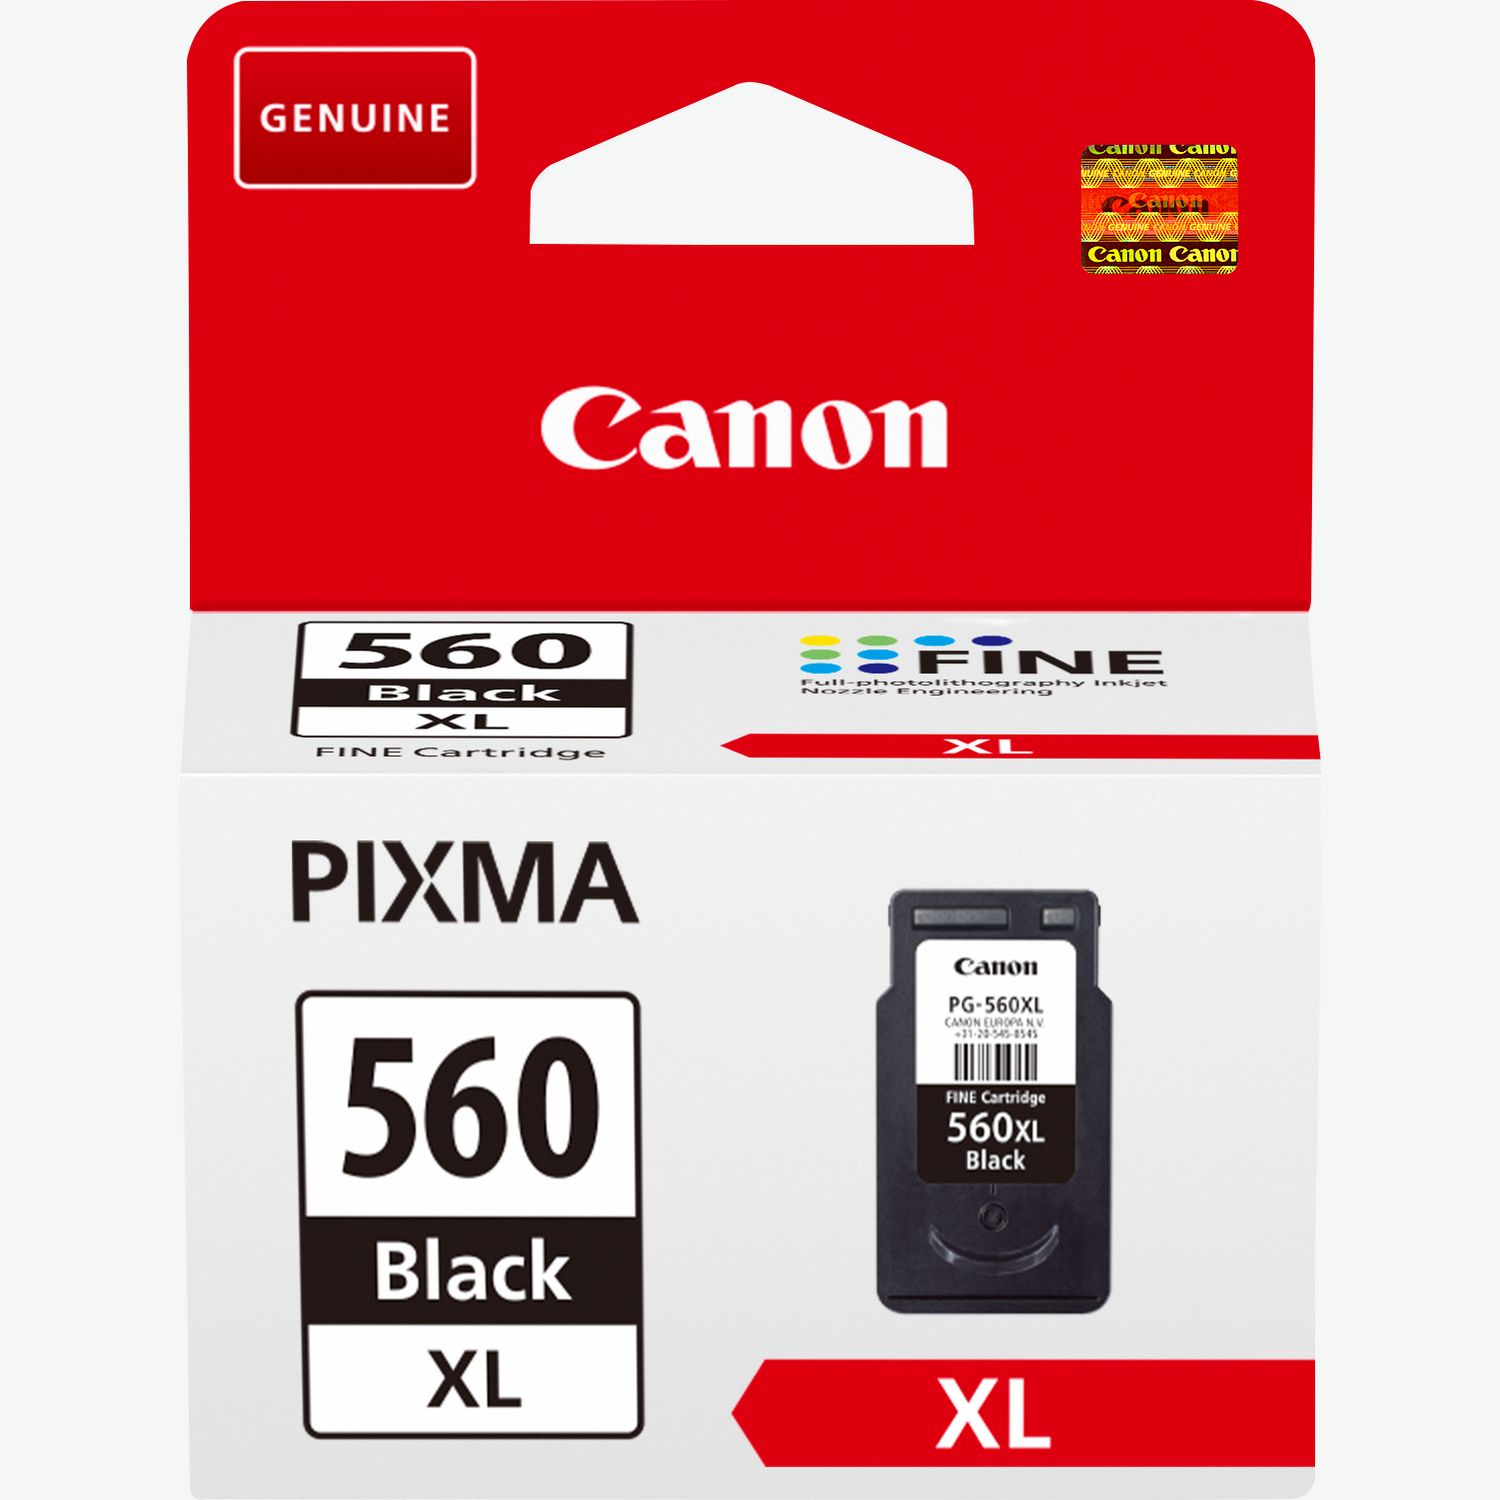 Imprimante multifonction Pixma TS5350 A Canon